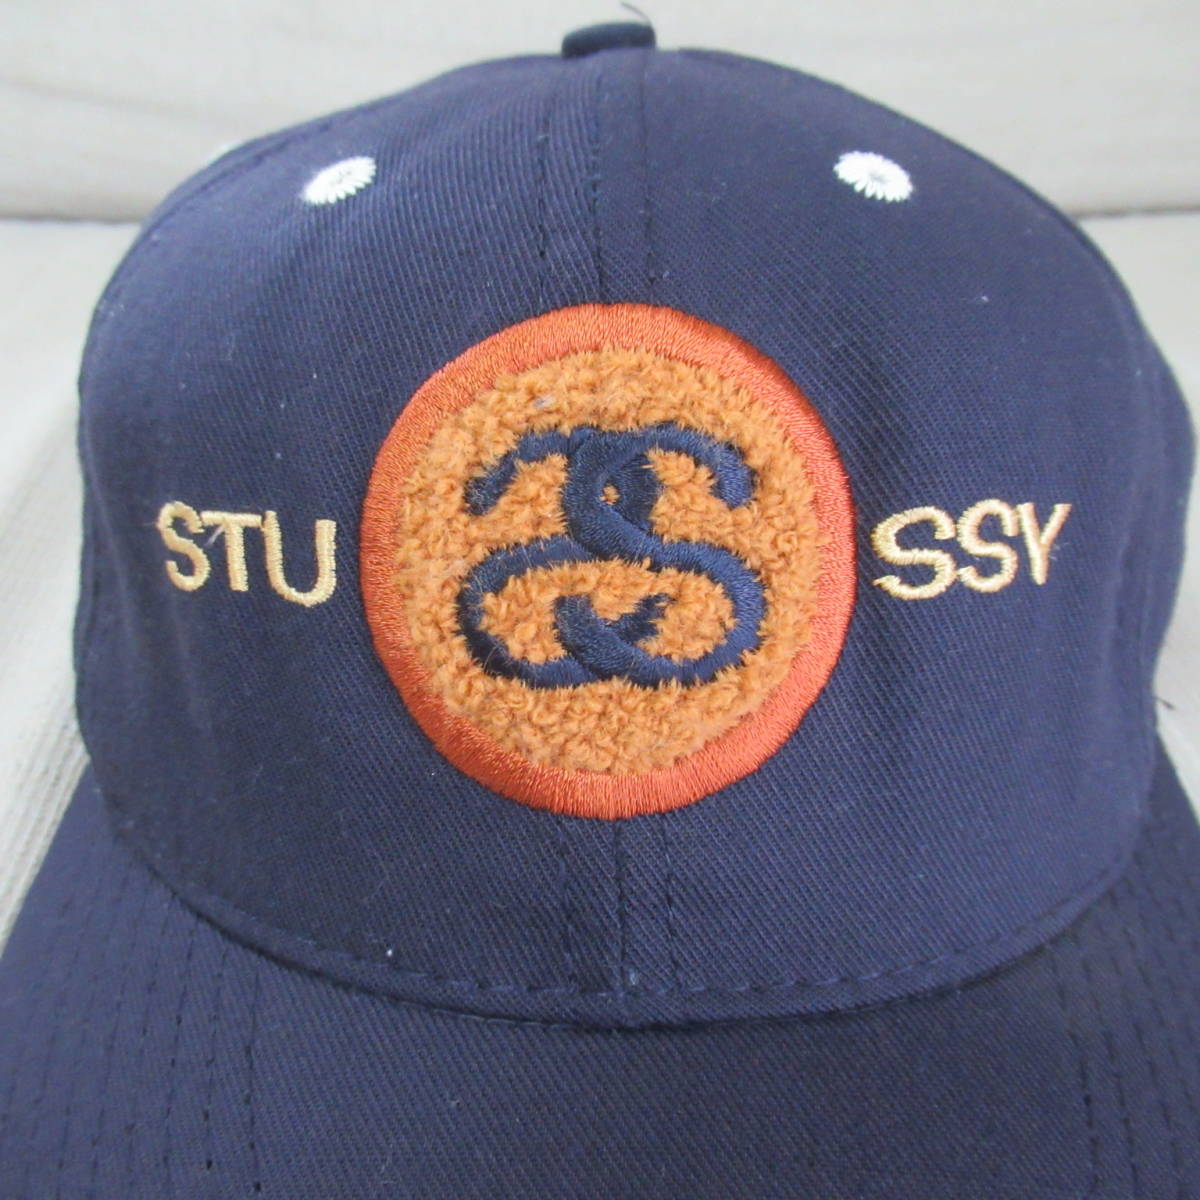 即決送込 USA製 90s OLD STUSSY CAP キャップ 帽子 オールド hat スナップバック old oldstussy ステューシー